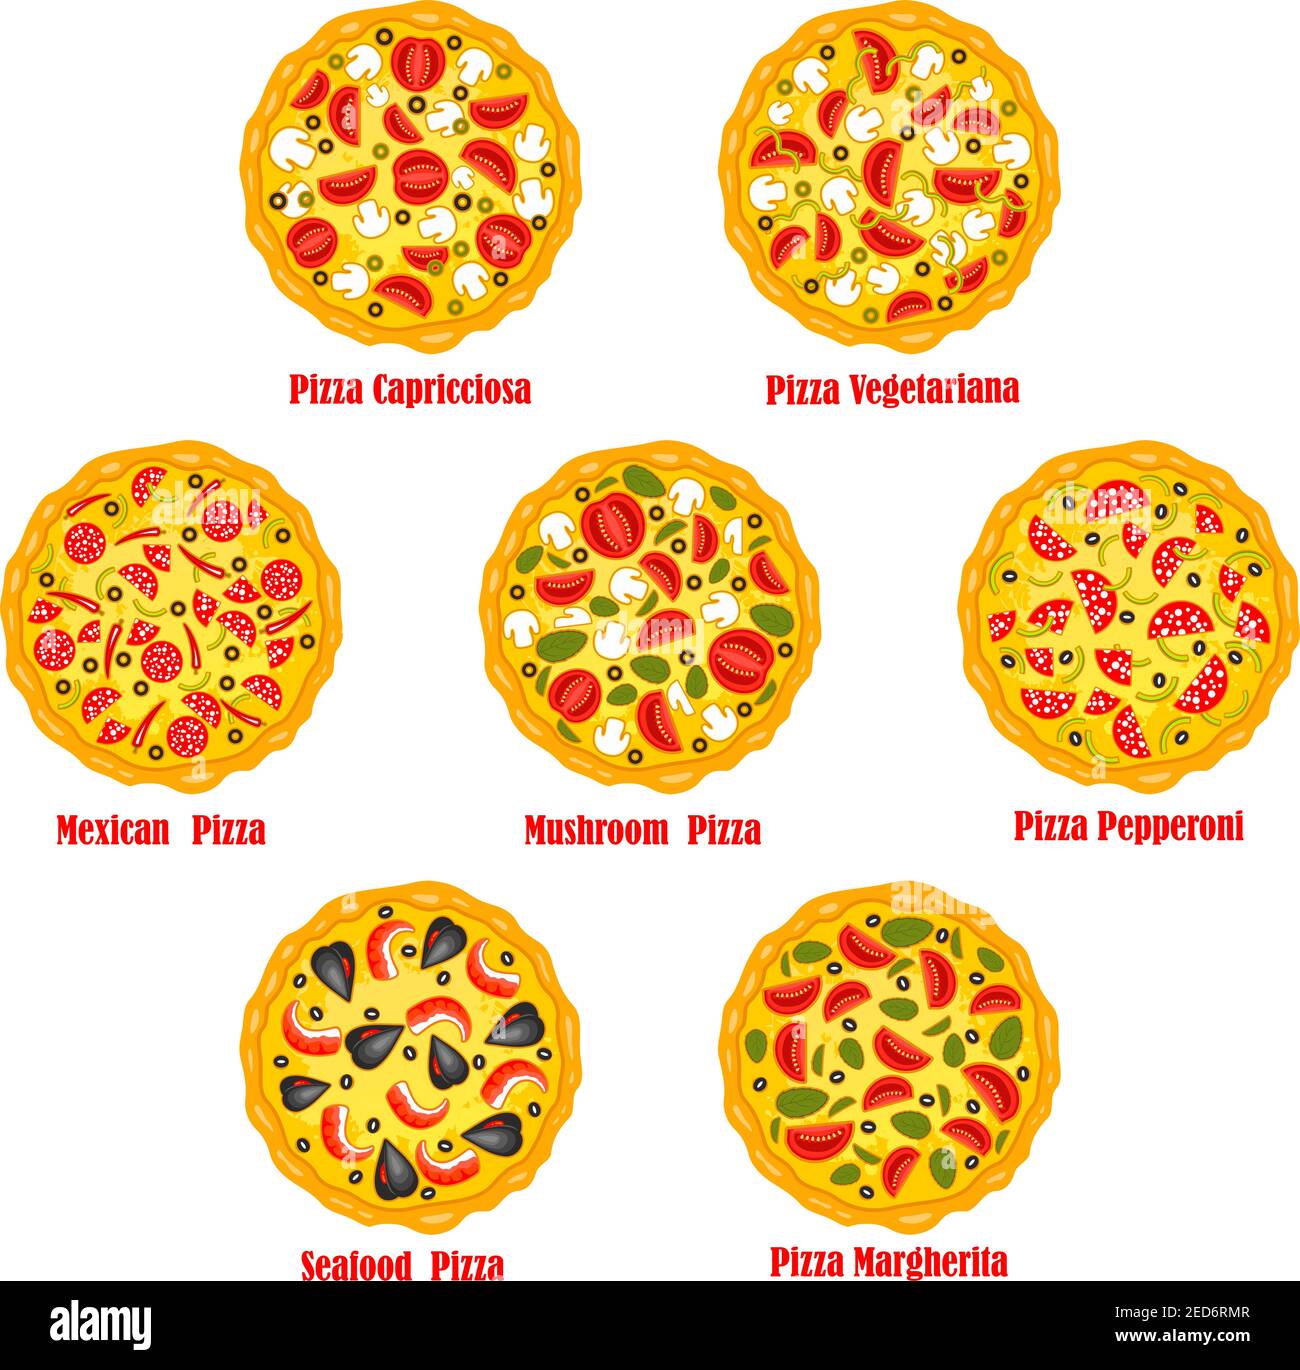 тех карта на пиццу пепперони фото 31